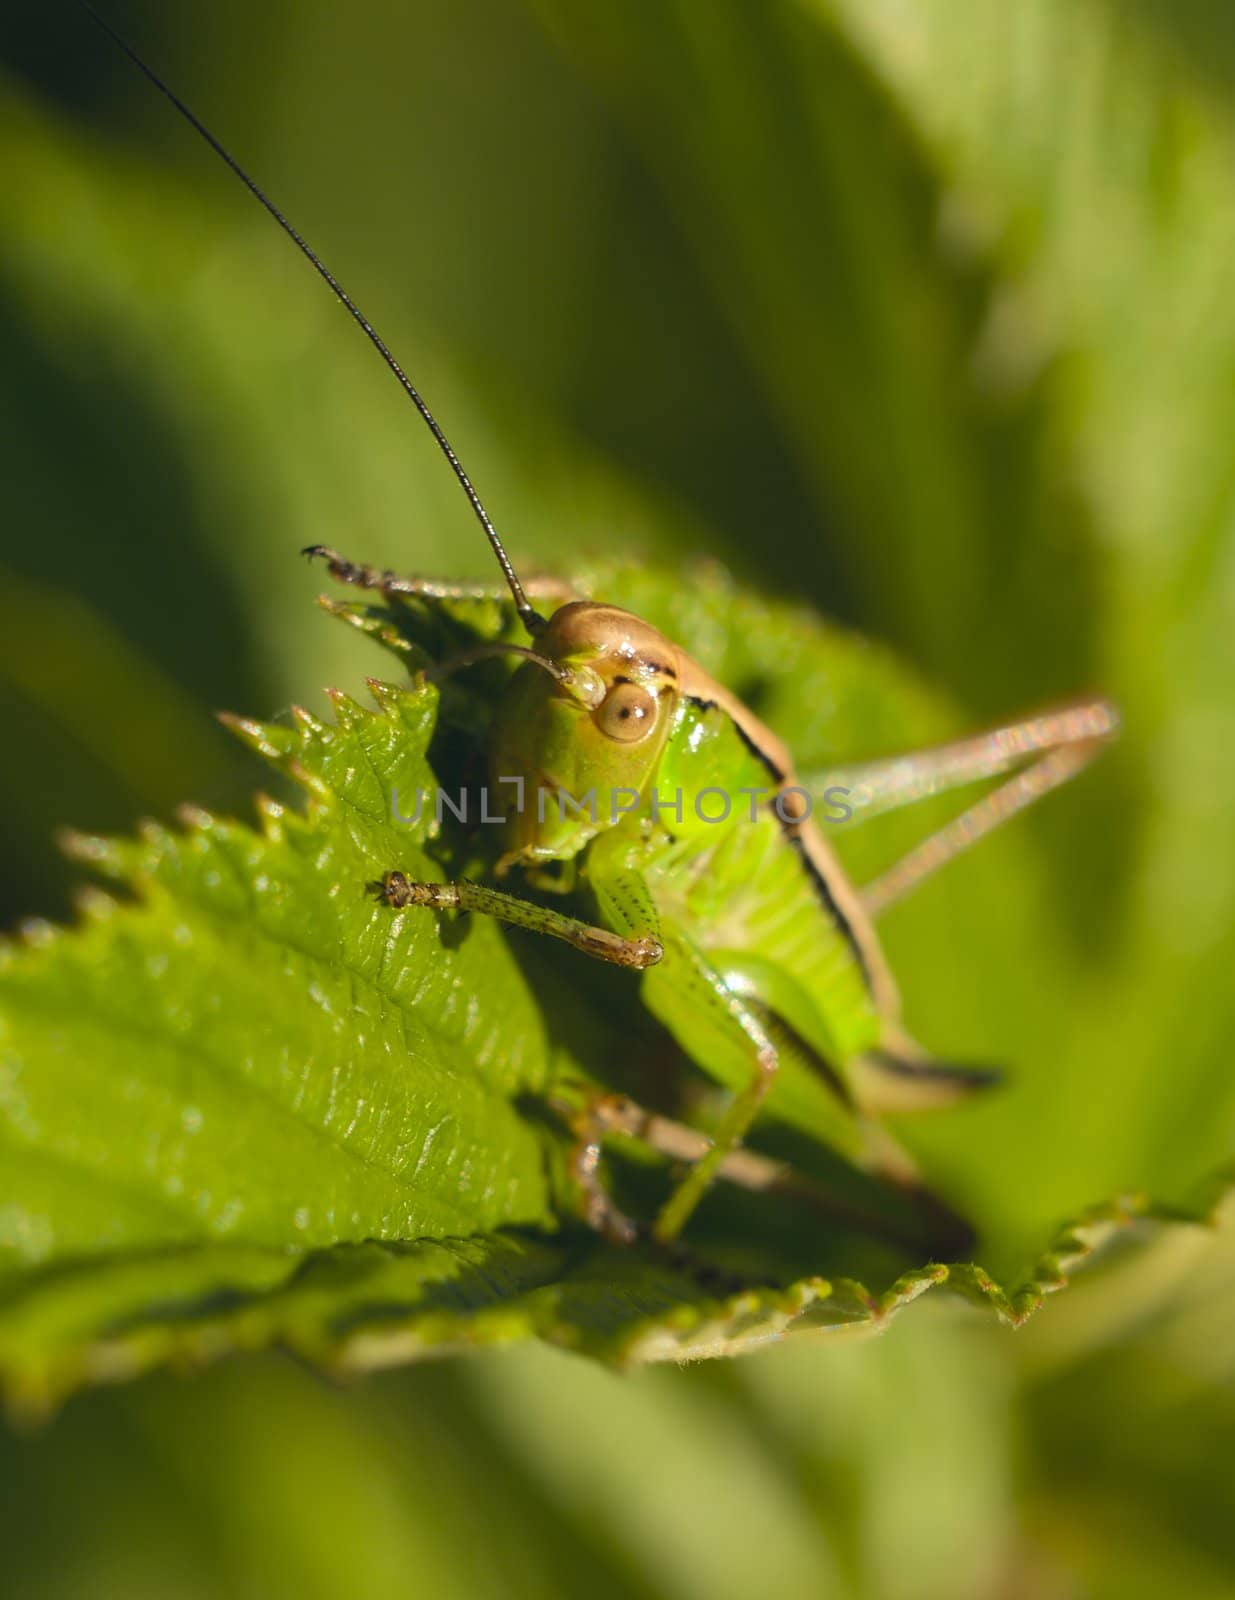 Grasshoper by liseykina